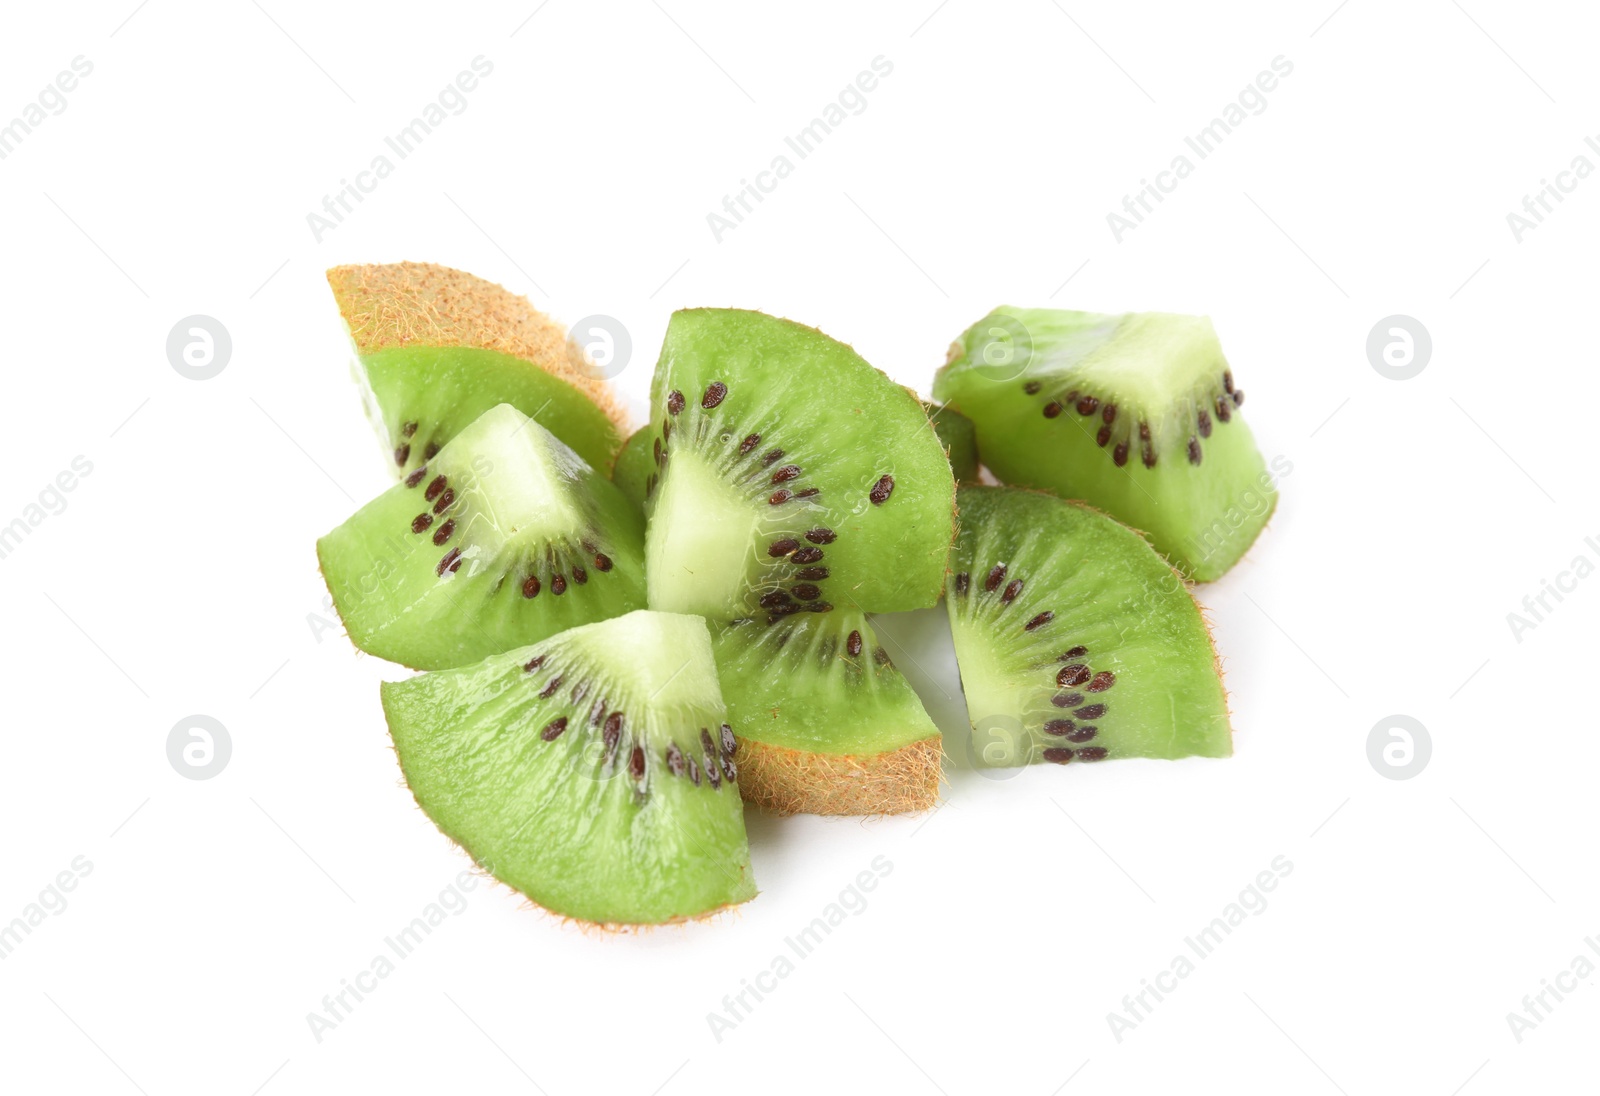 Photo of Cut fresh ripe kiwis on white background